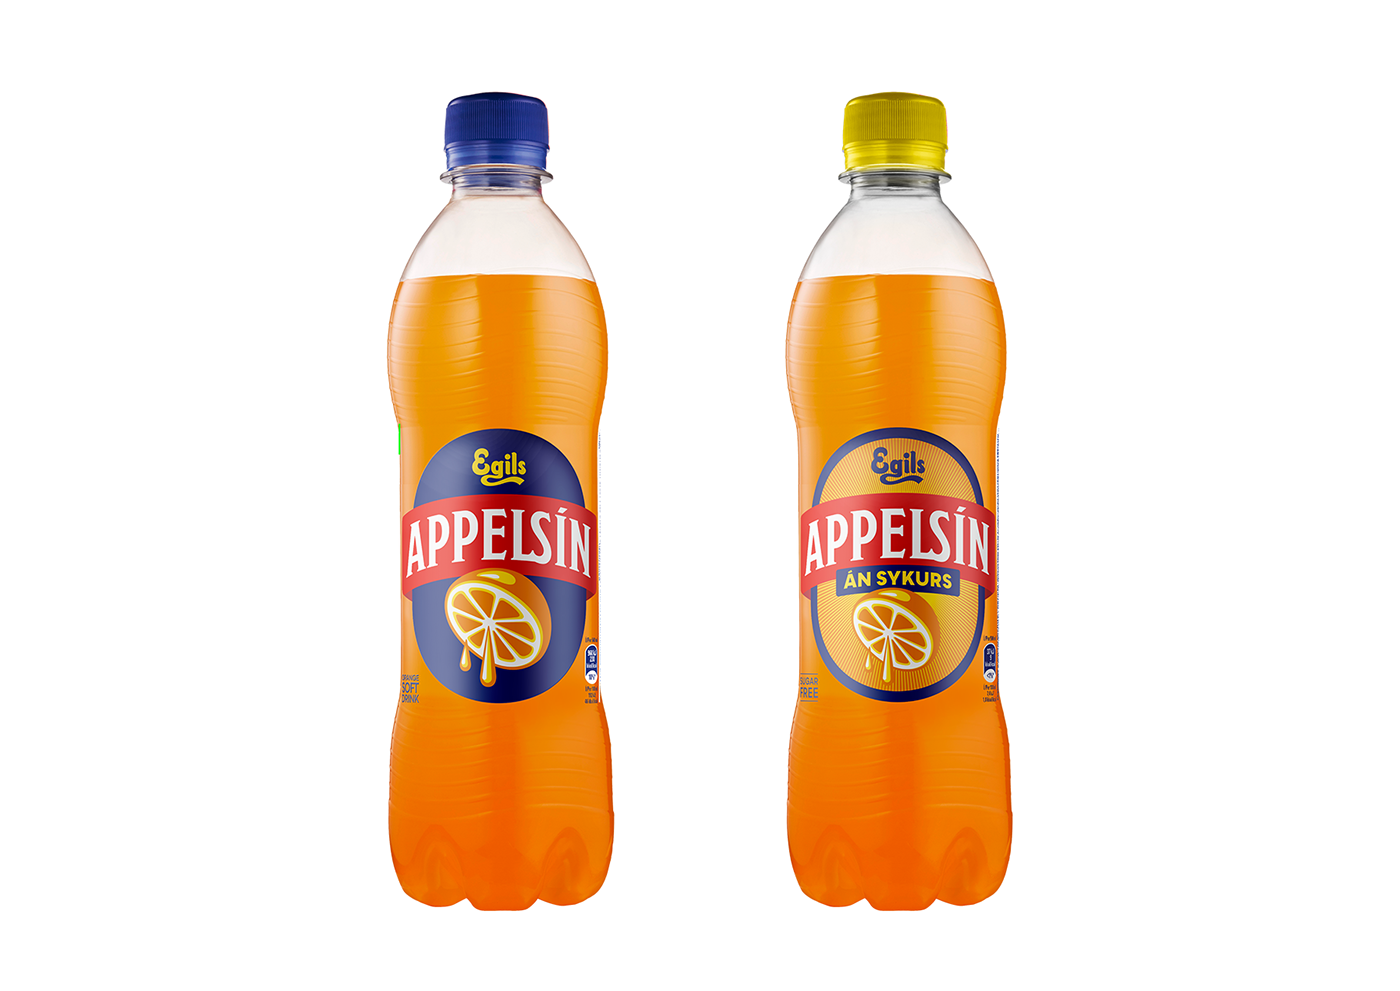 art direction  branding  graphic design  logo Packaging soda soft drinks